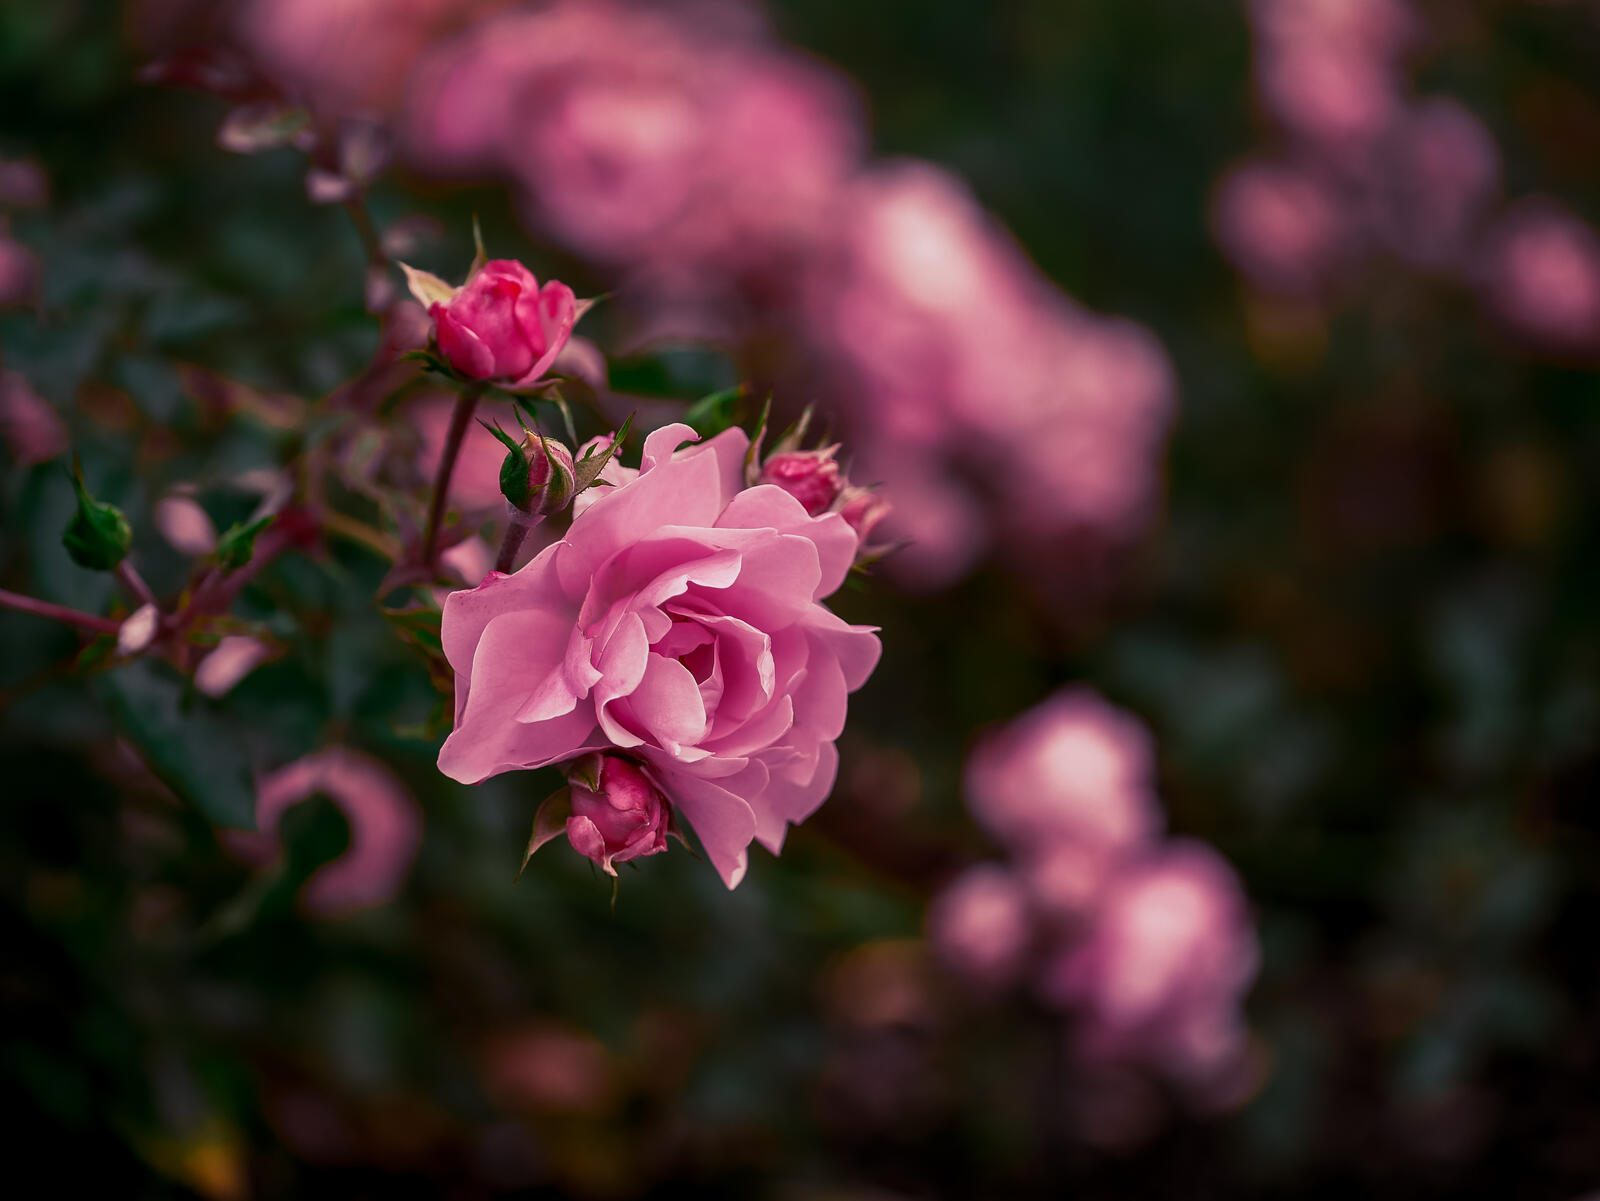 Бесплатное фото Кустарник с красивыми розовыми розами